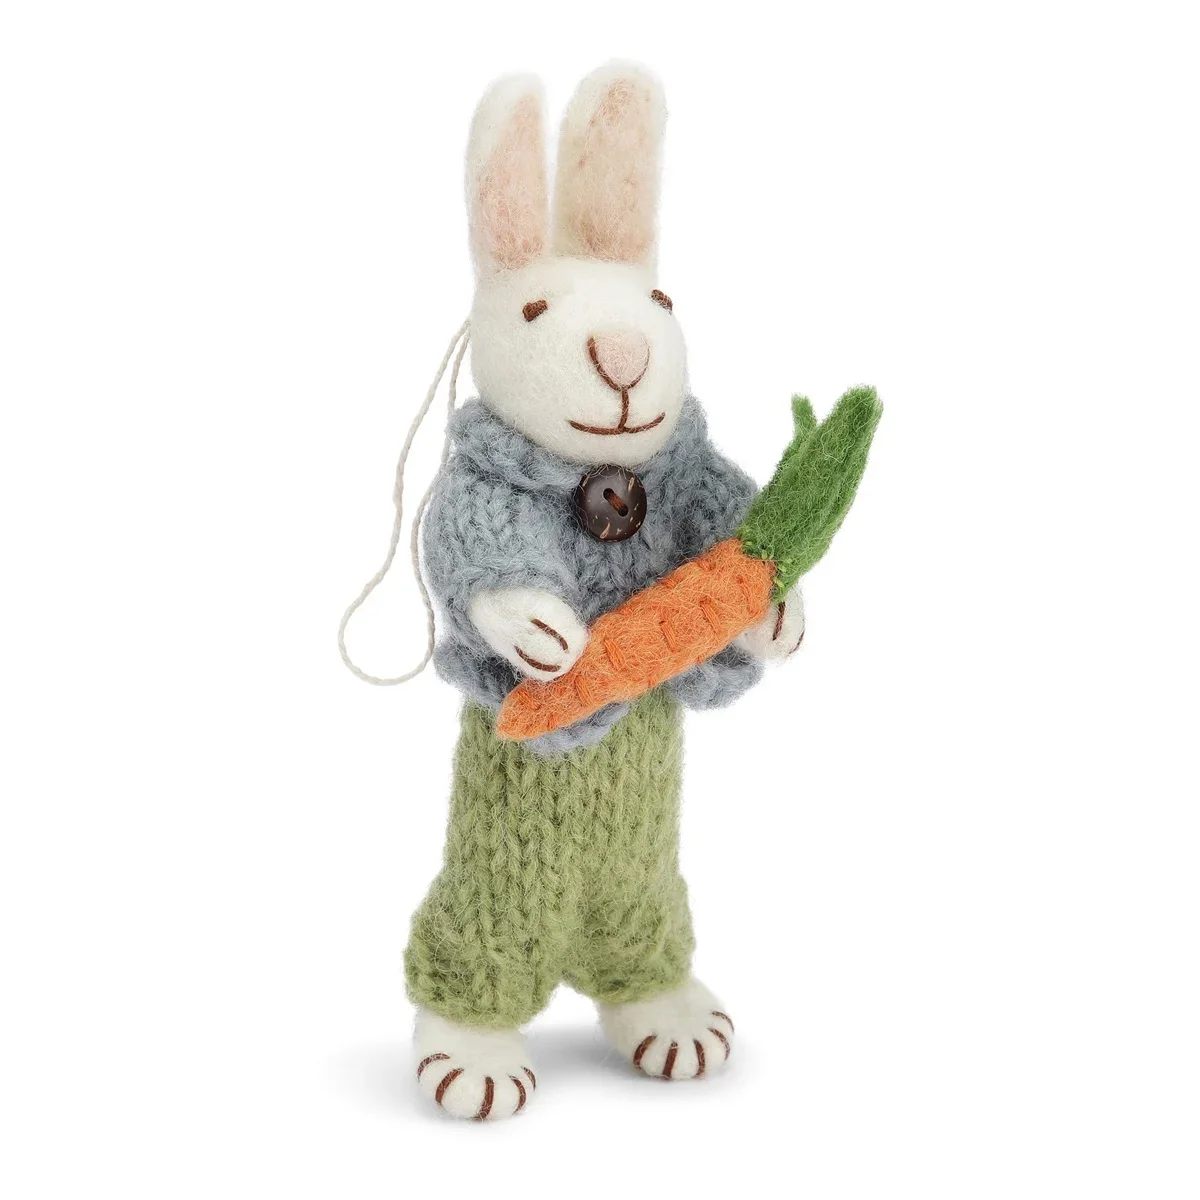 Hvid kanin fra Gry og Sif-filtet-med bl jakke, grnne bukser og gulerod